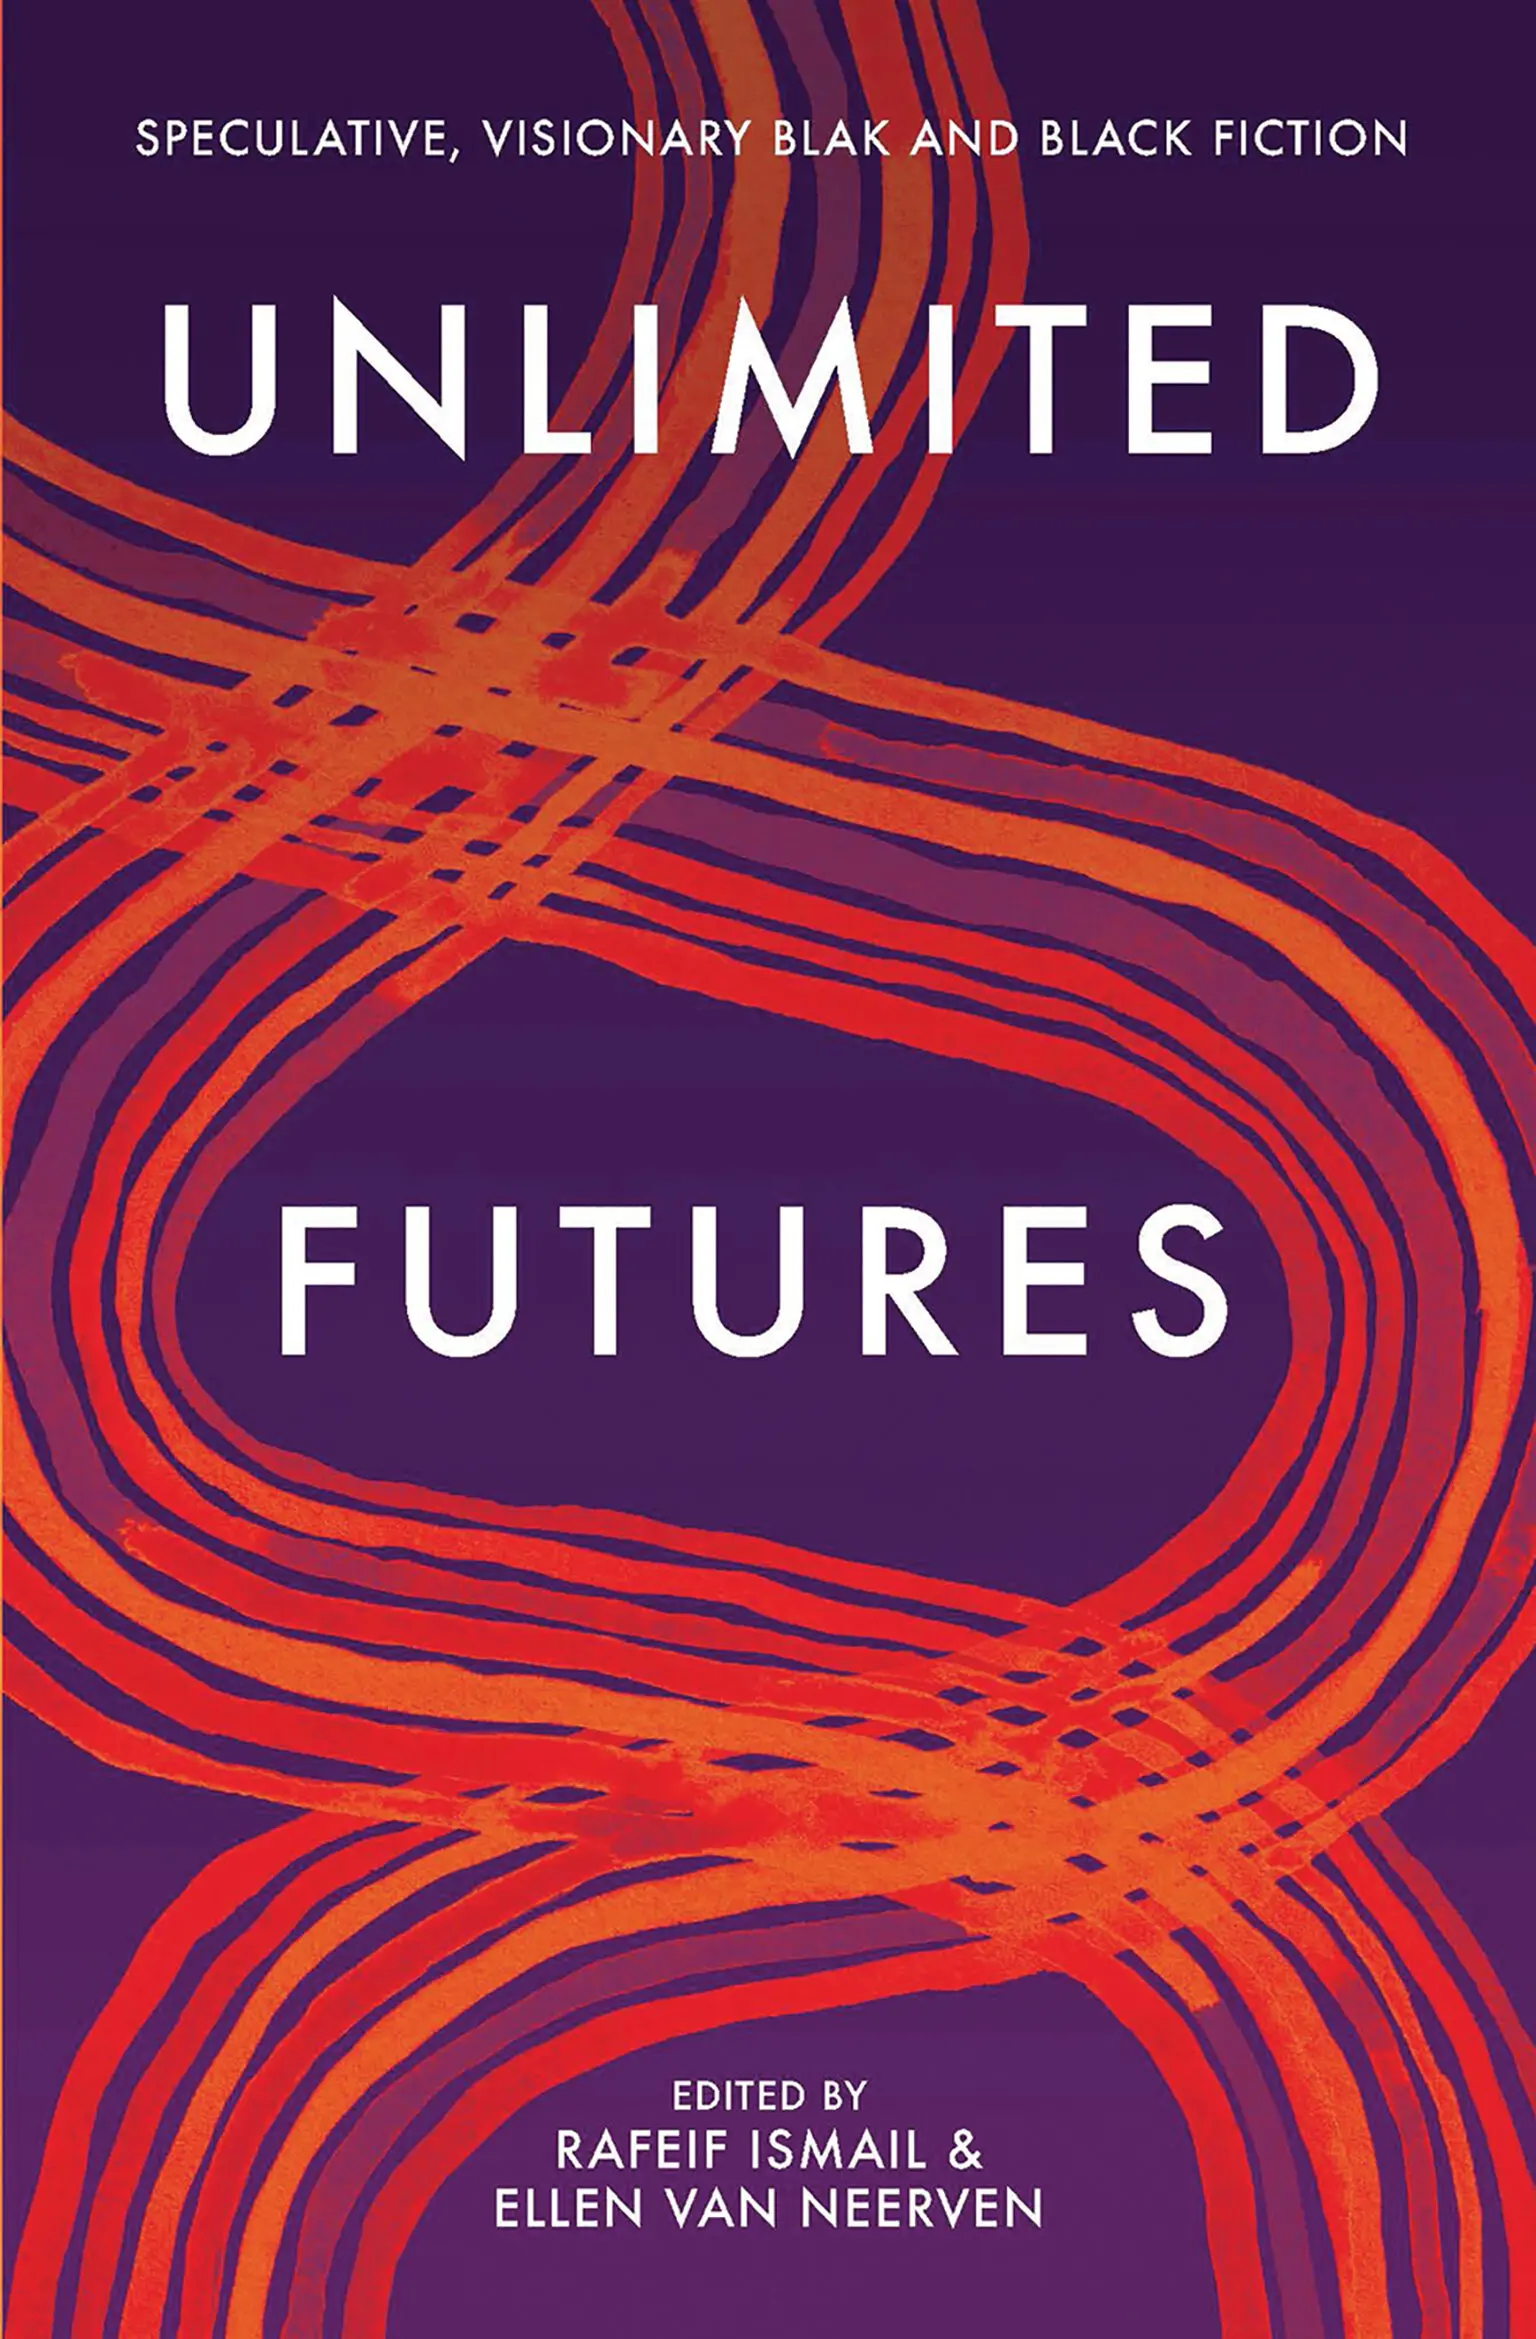 Unlimited Futures, edited by Rafeif Ismail & Ellen Van Neerven